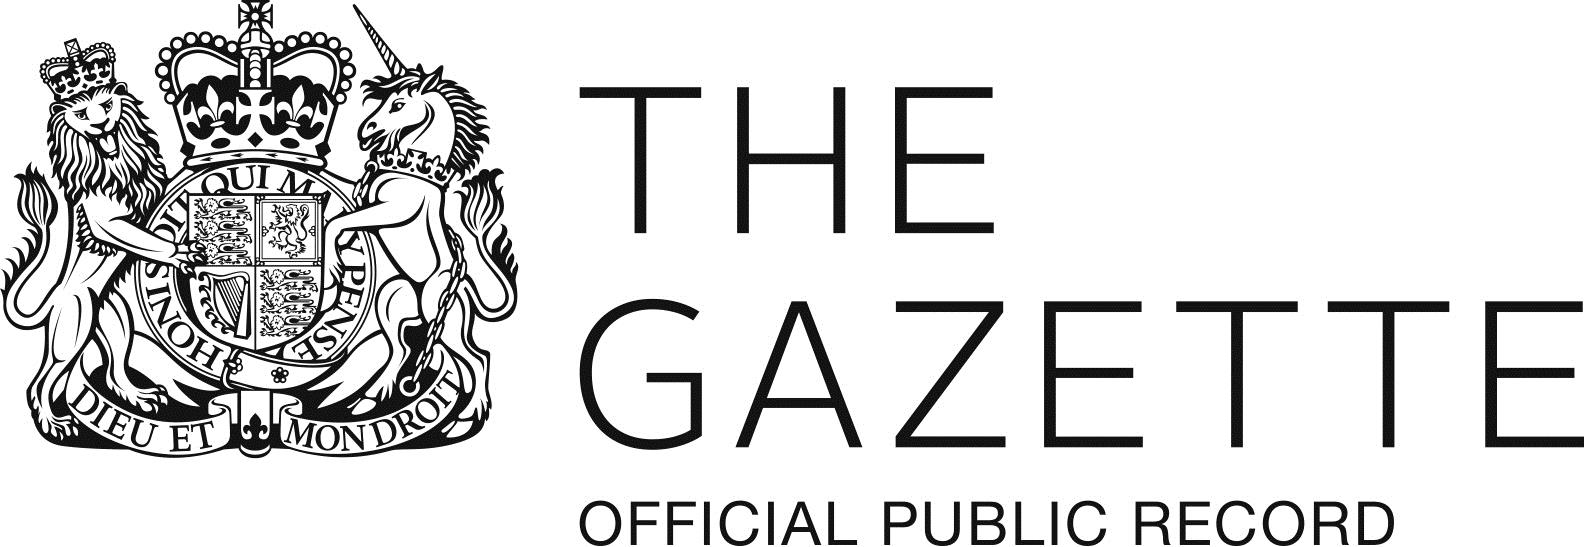 gazette strapline logo